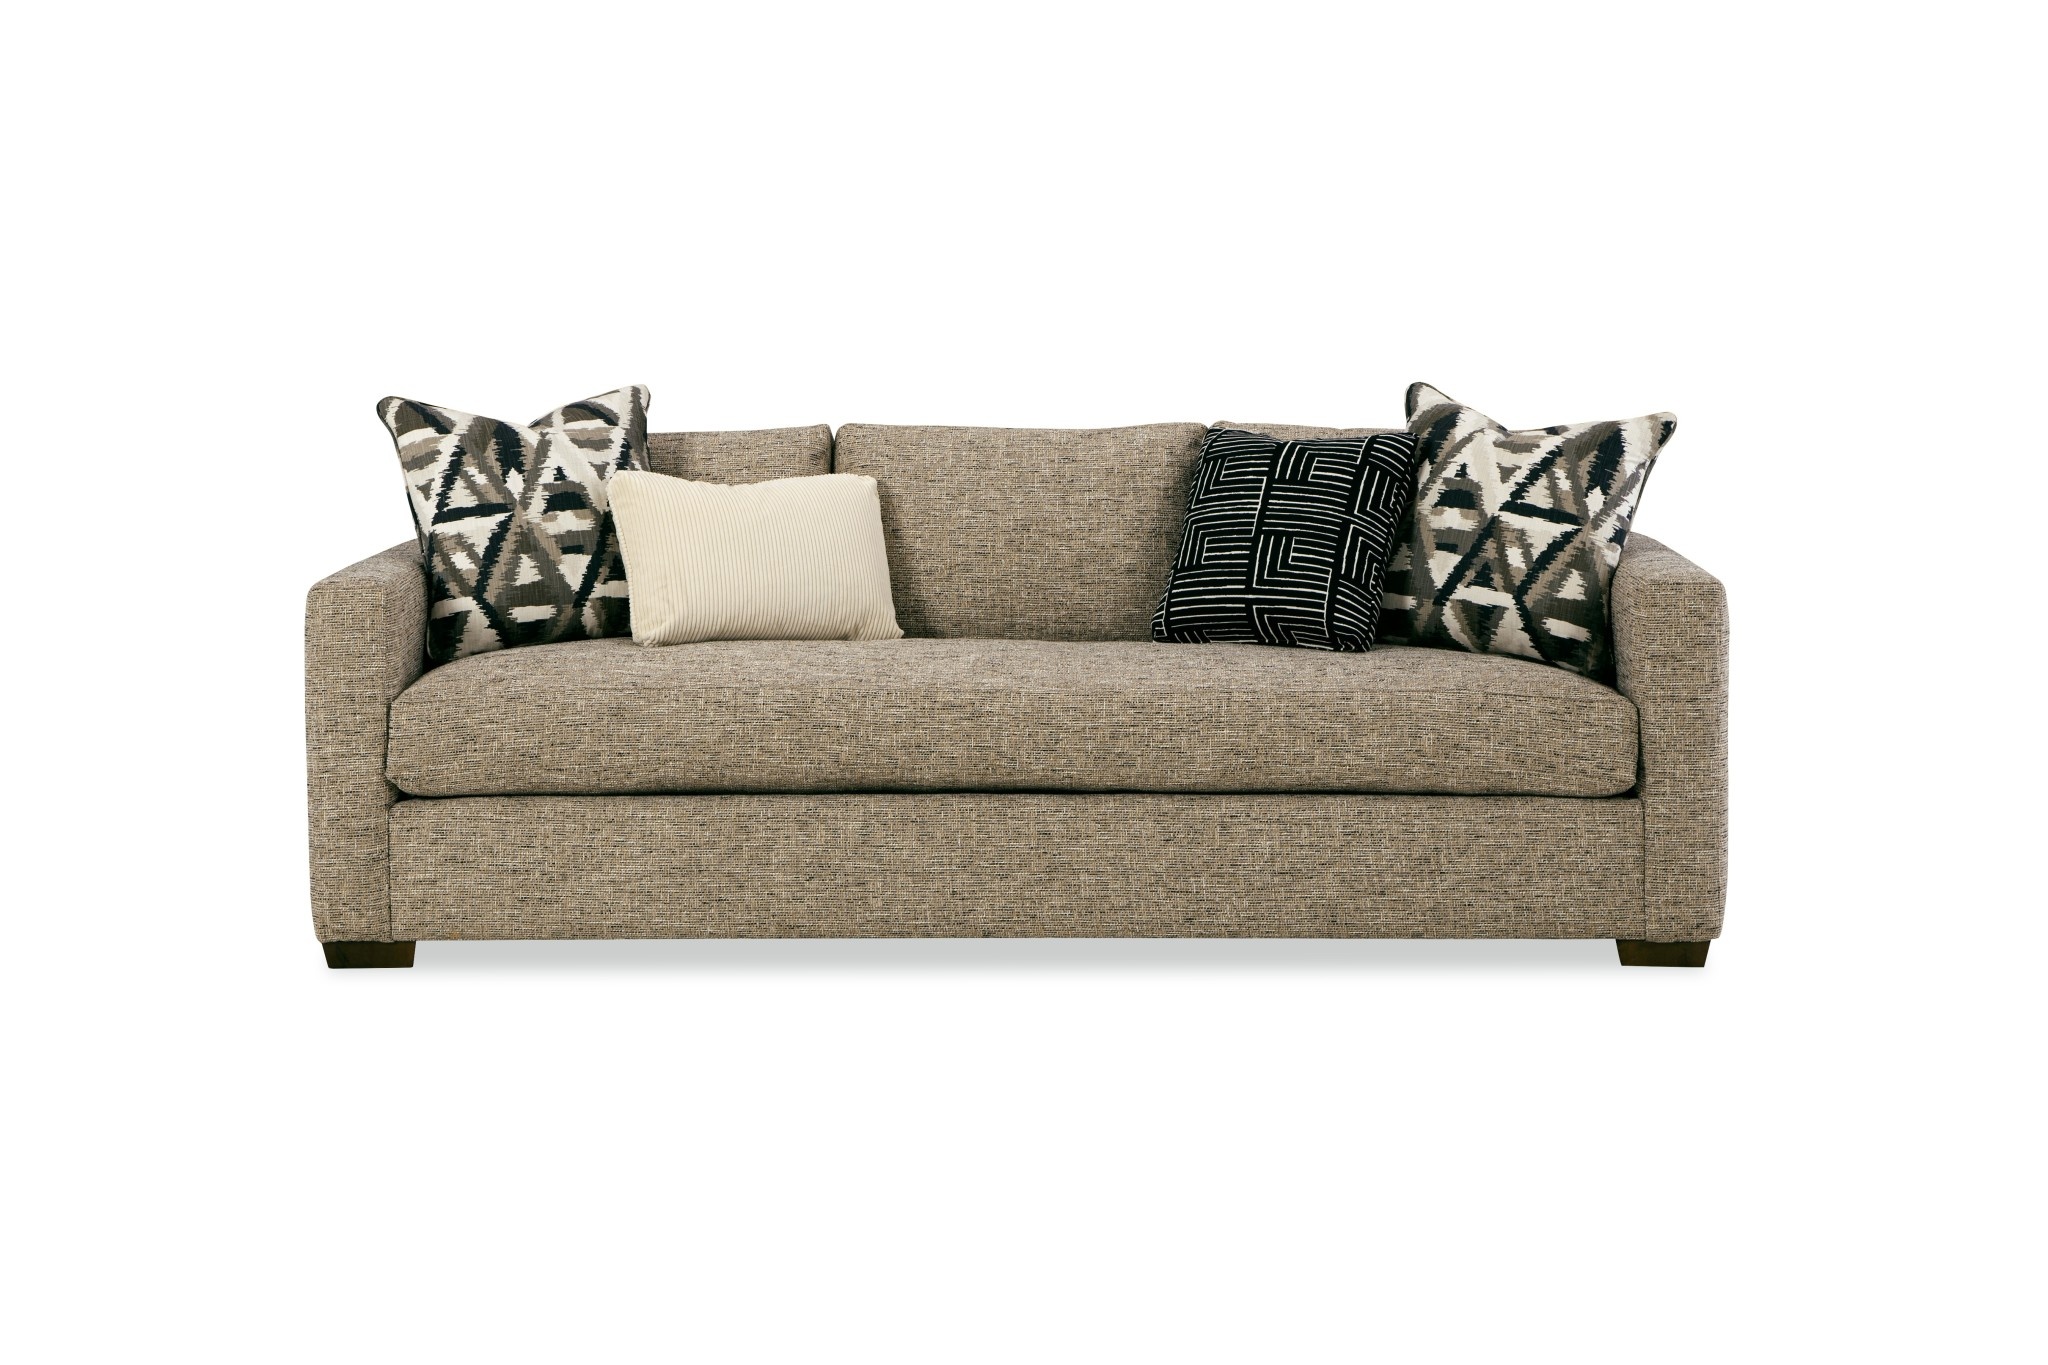 Craftmaster Furniture 7927 Bench Seat Sofa